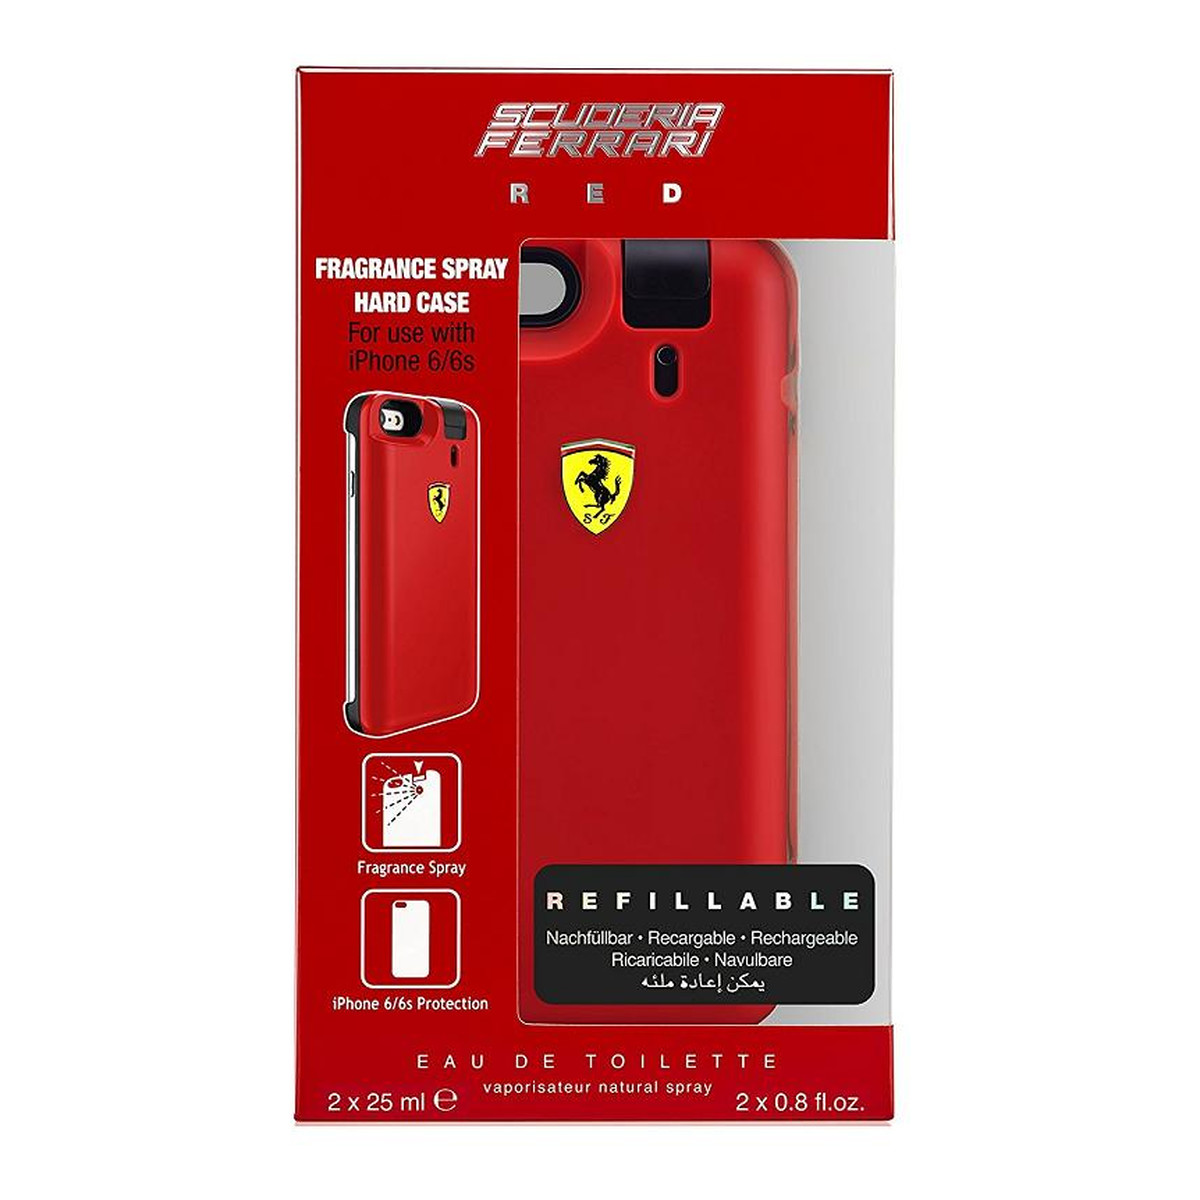 Ferrari Scuderia Red Zestaw woda toaletowa refillable 2 x 25ml + iphone 6/6s phone case